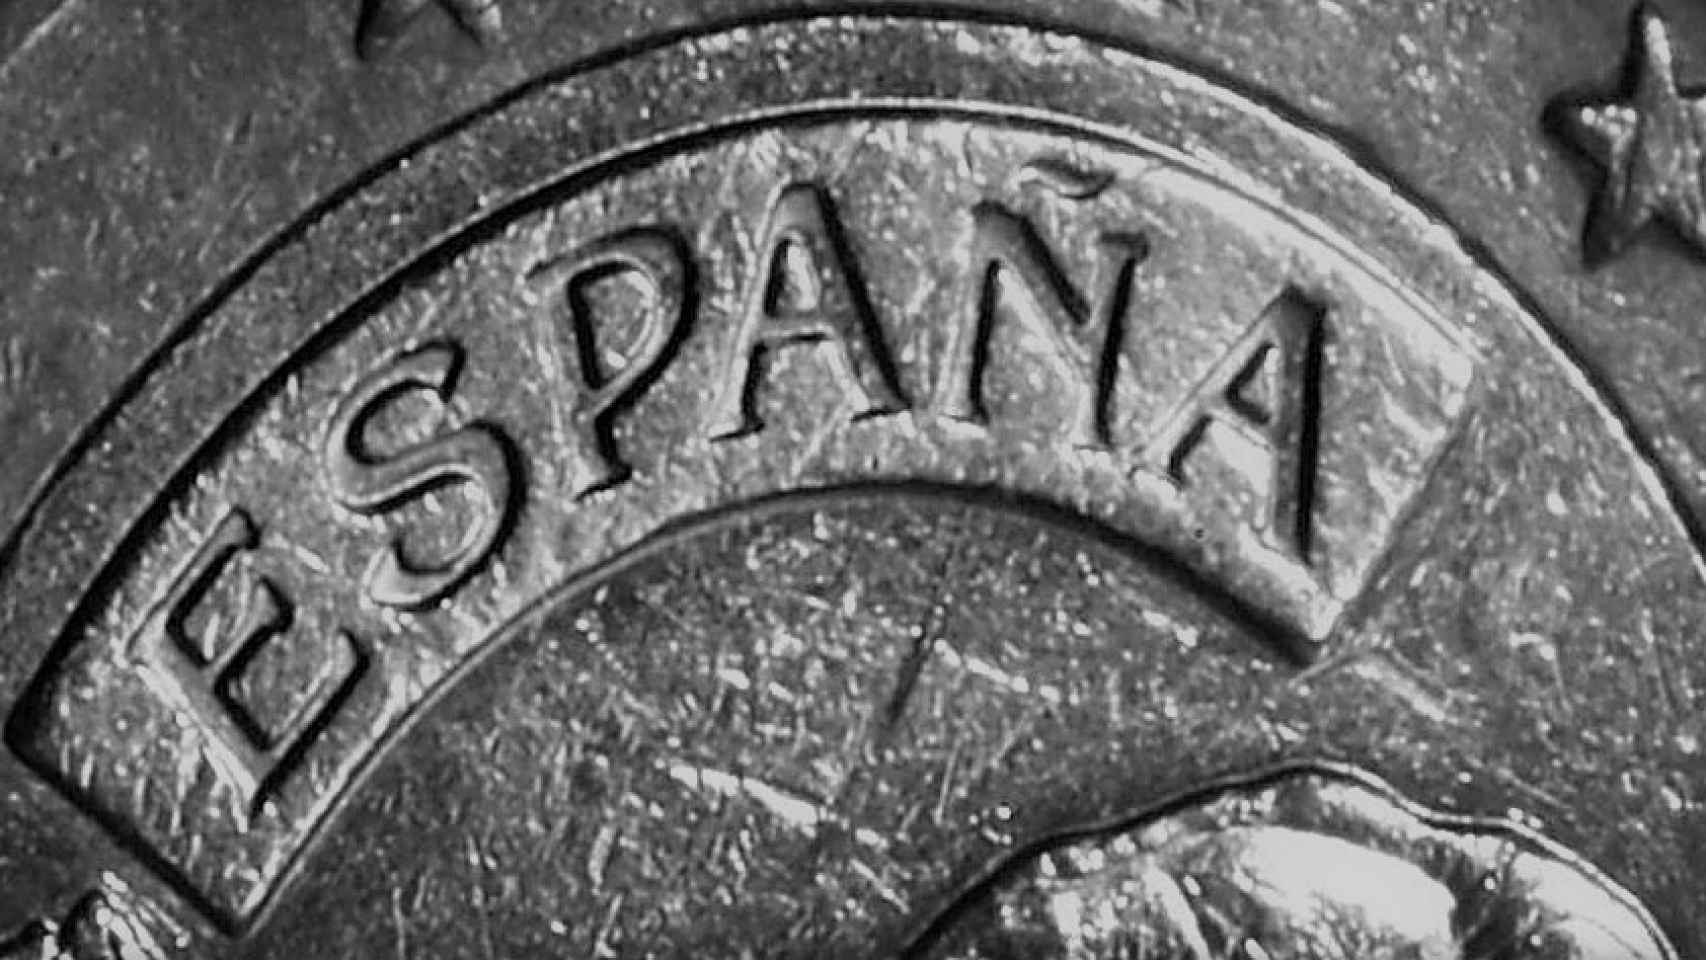 Detalle de una moneda española de un euro.